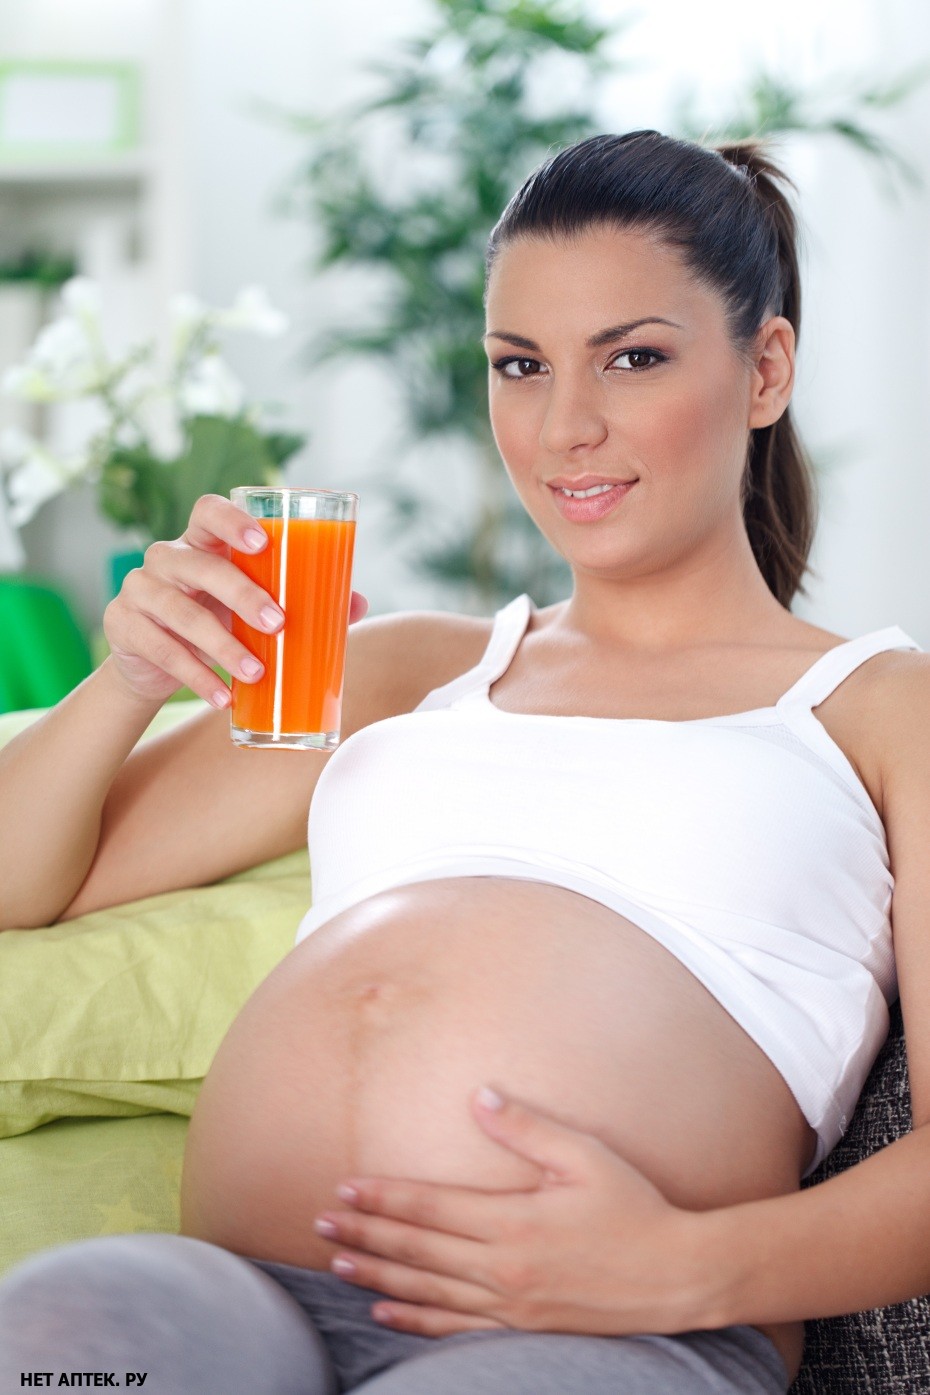 Можно ли пить свежевыжатый сок беременным?